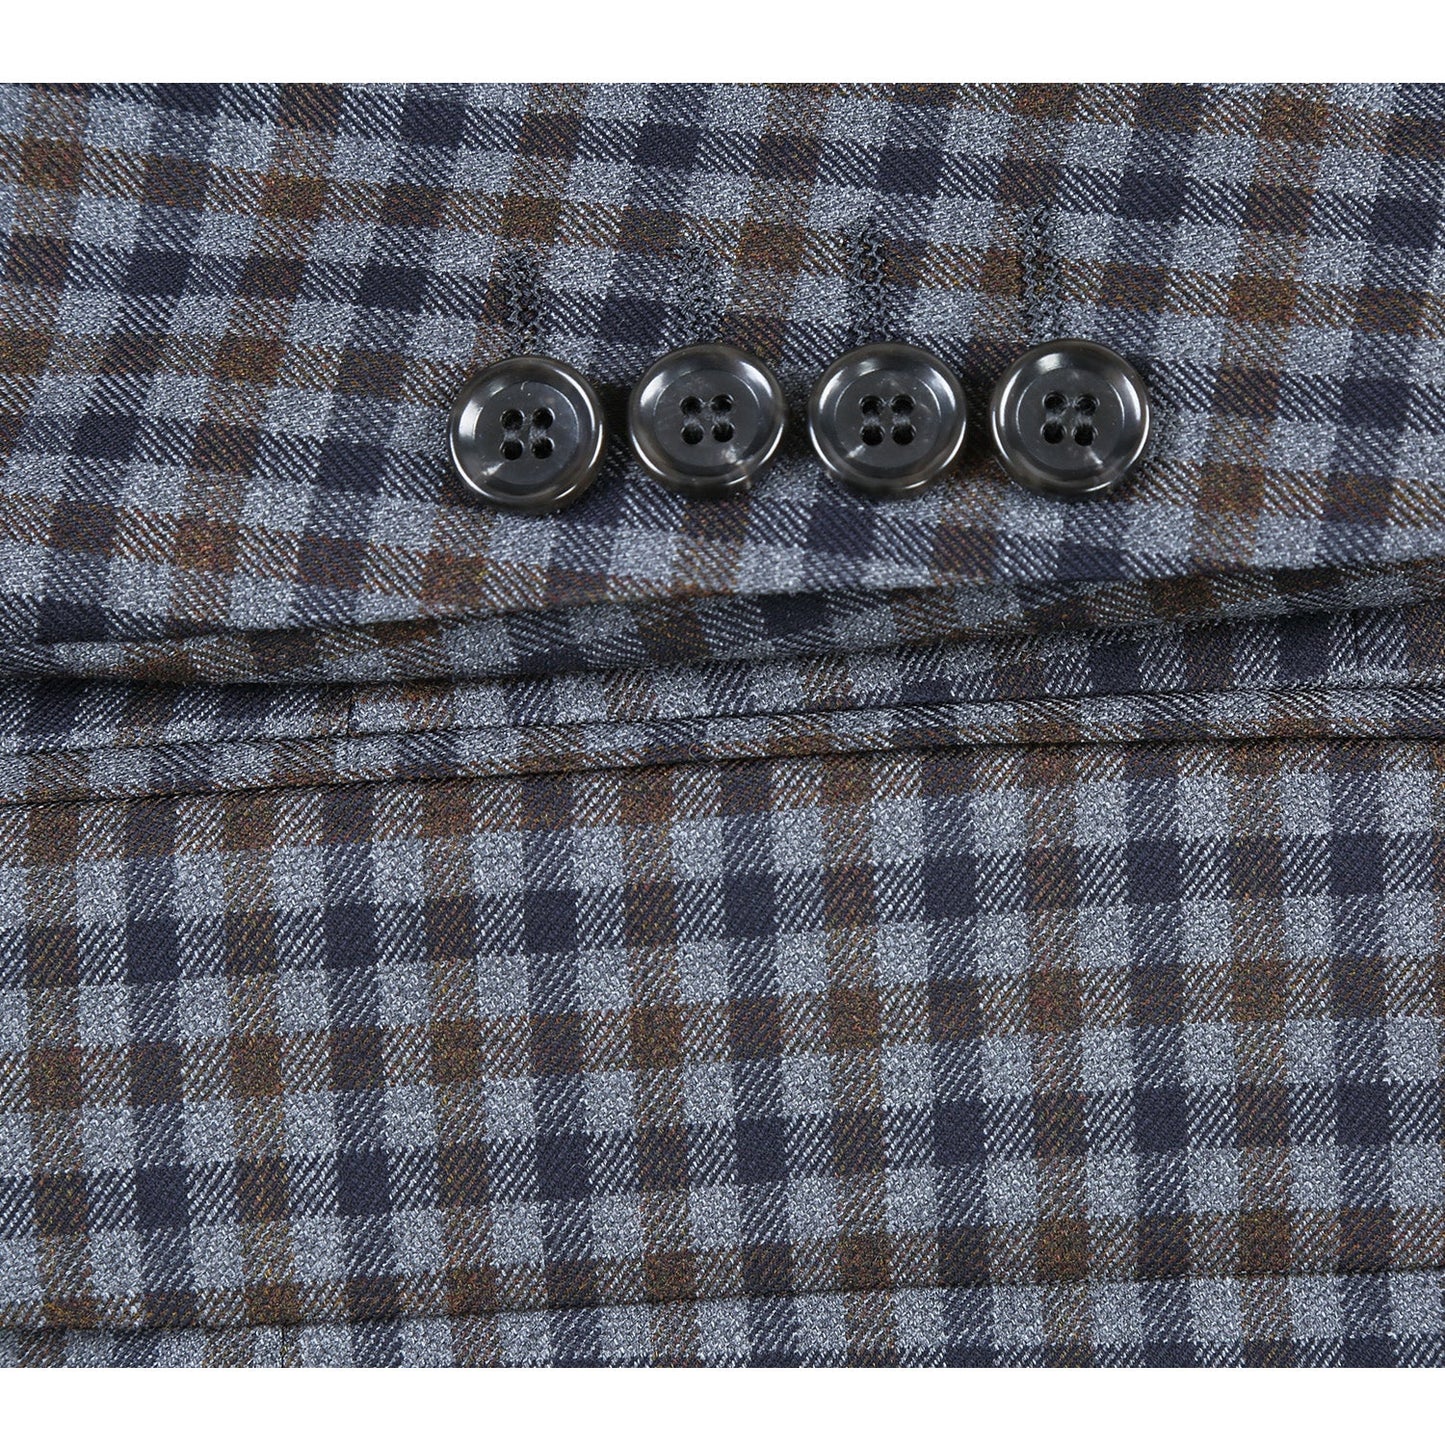 563-10 Men's Slim Fit Wool Grey/Blue/Brown Checked Sport Coat